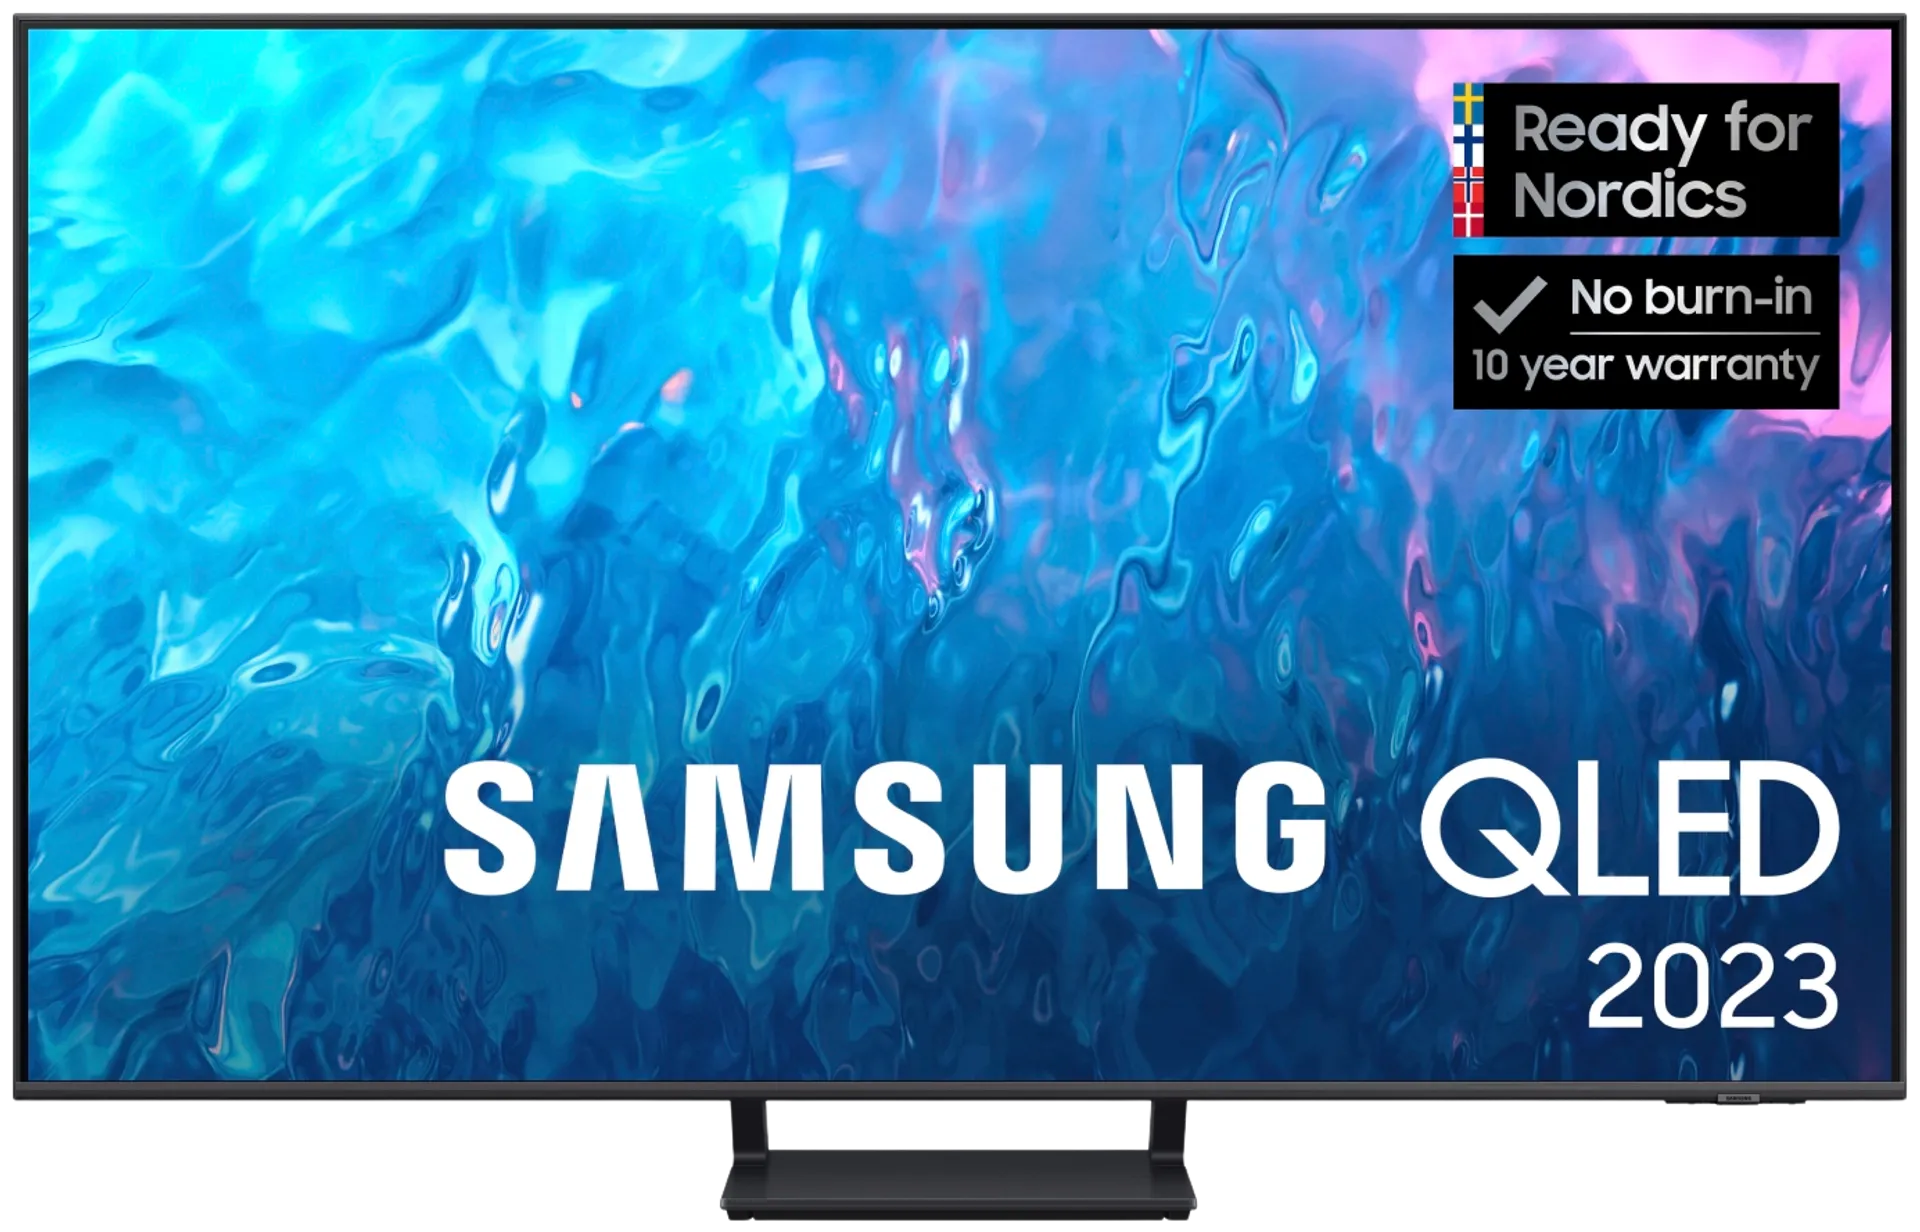 Samsung TQ55Q70C 55" 4K UHD QLED Smart TV - 1